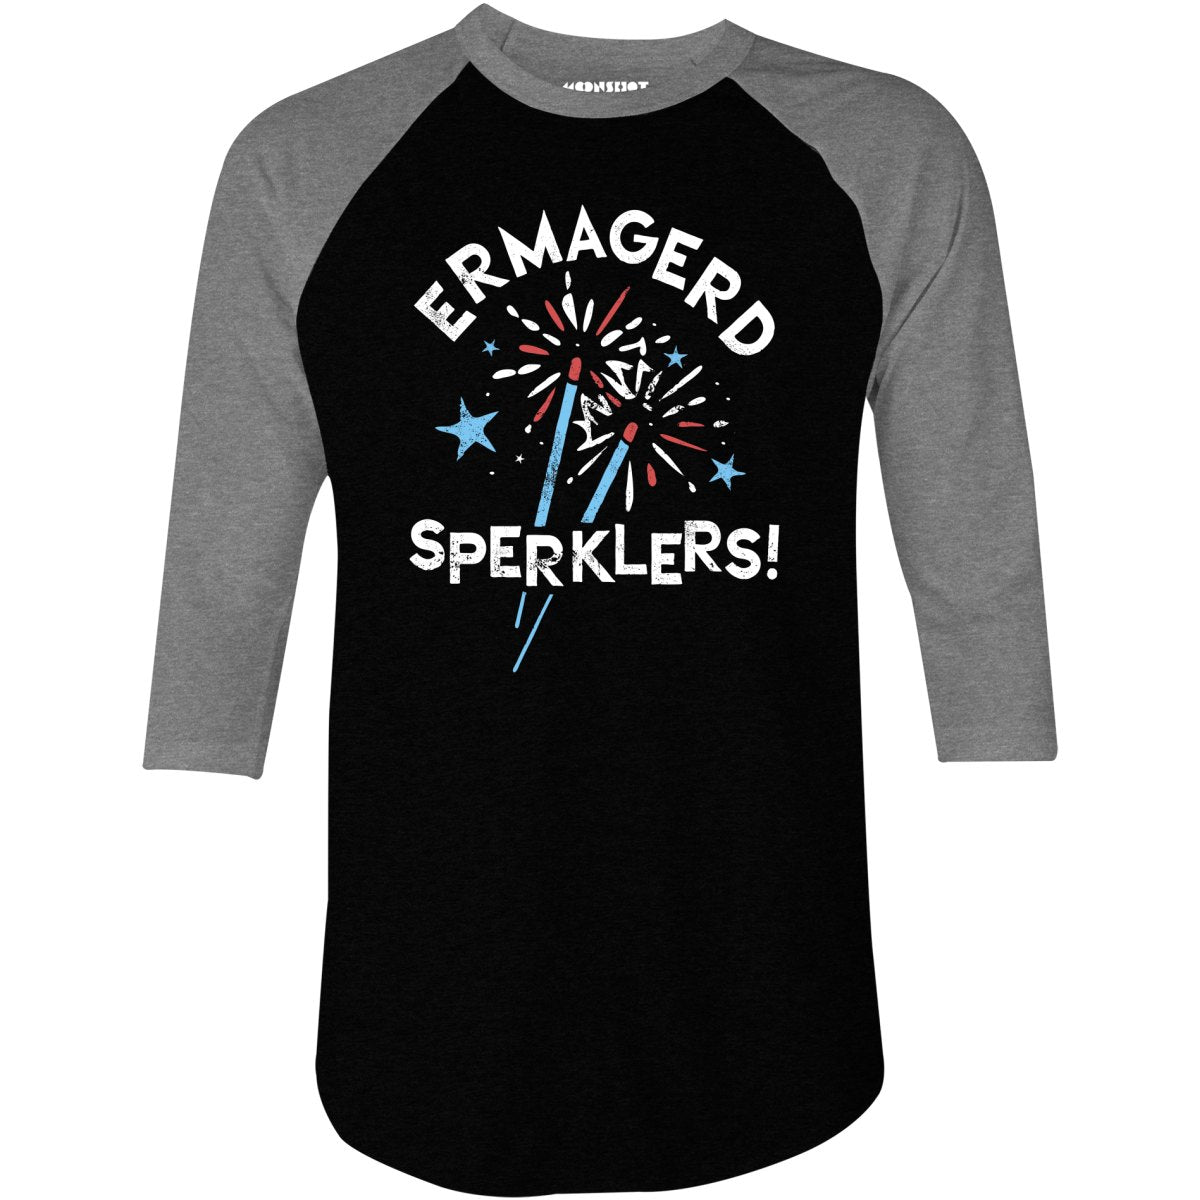 Ermagerd Sperklers! - 3/4 Sleeve Raglan T-Shirt